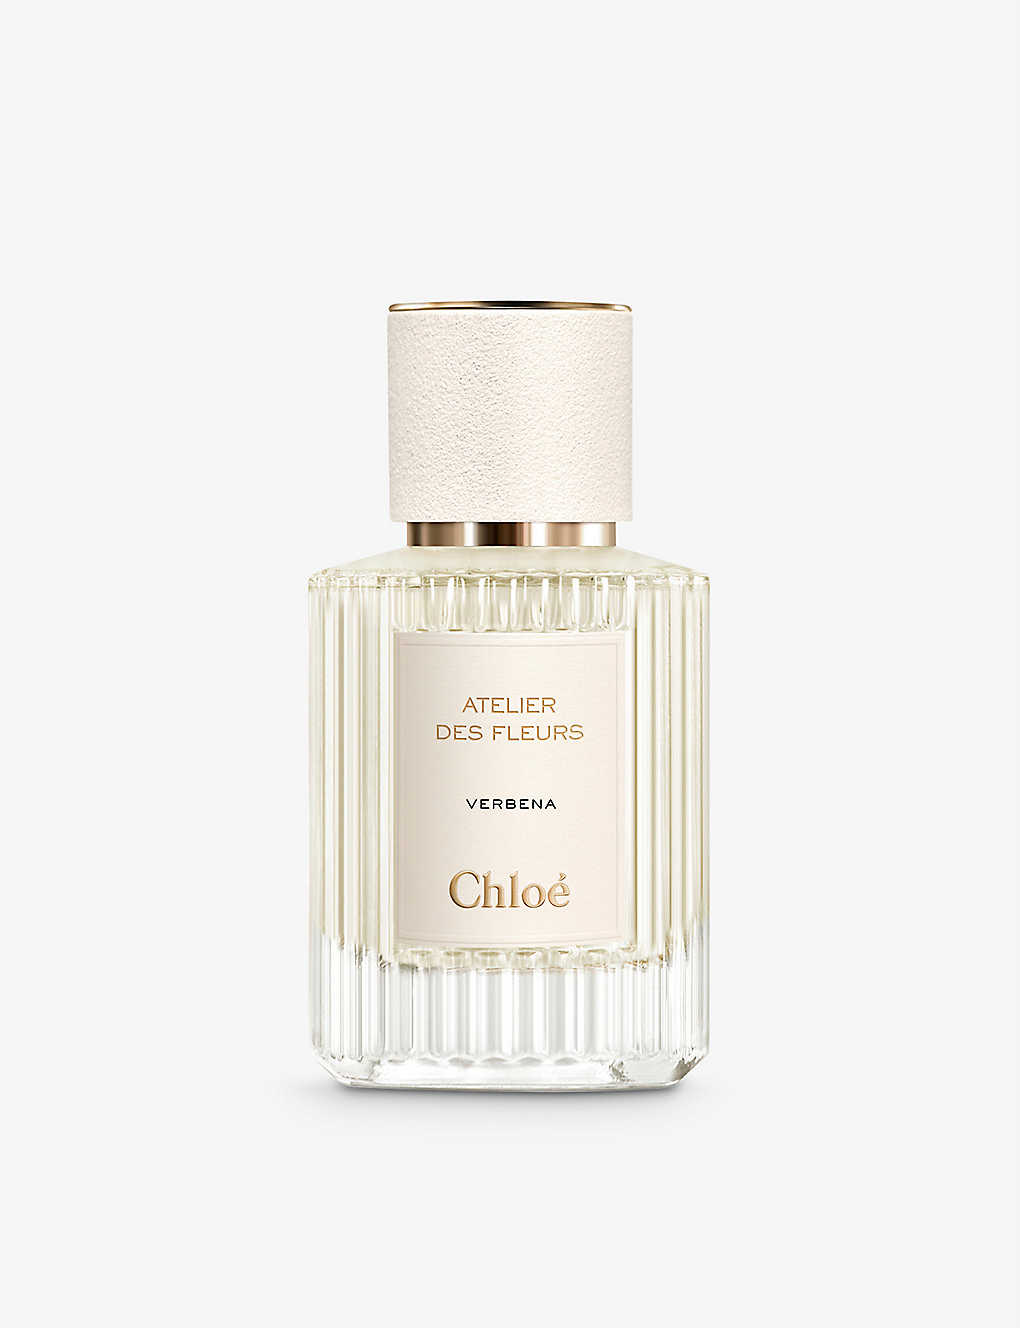 Chloé Atelier Des Fleurs Verbena Eau De Parfum 50ml